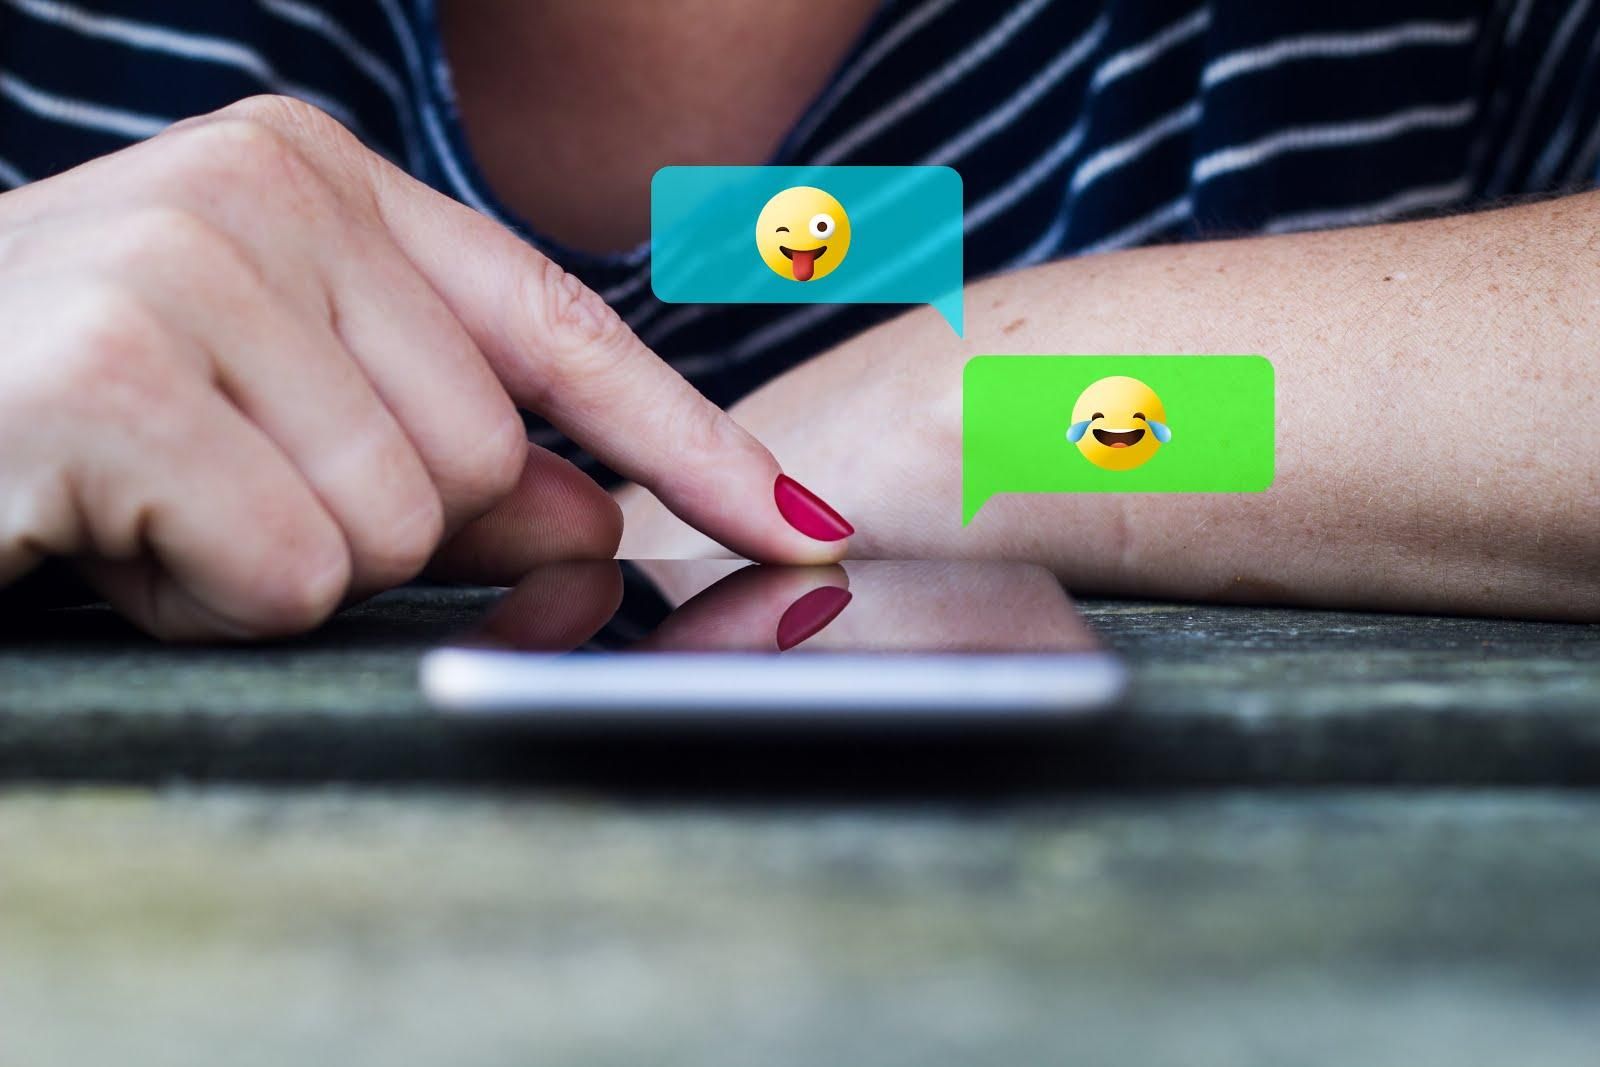 Смайлики в СМС-повідомленнях впливають на стосунки і сексуальне життя: дослідження